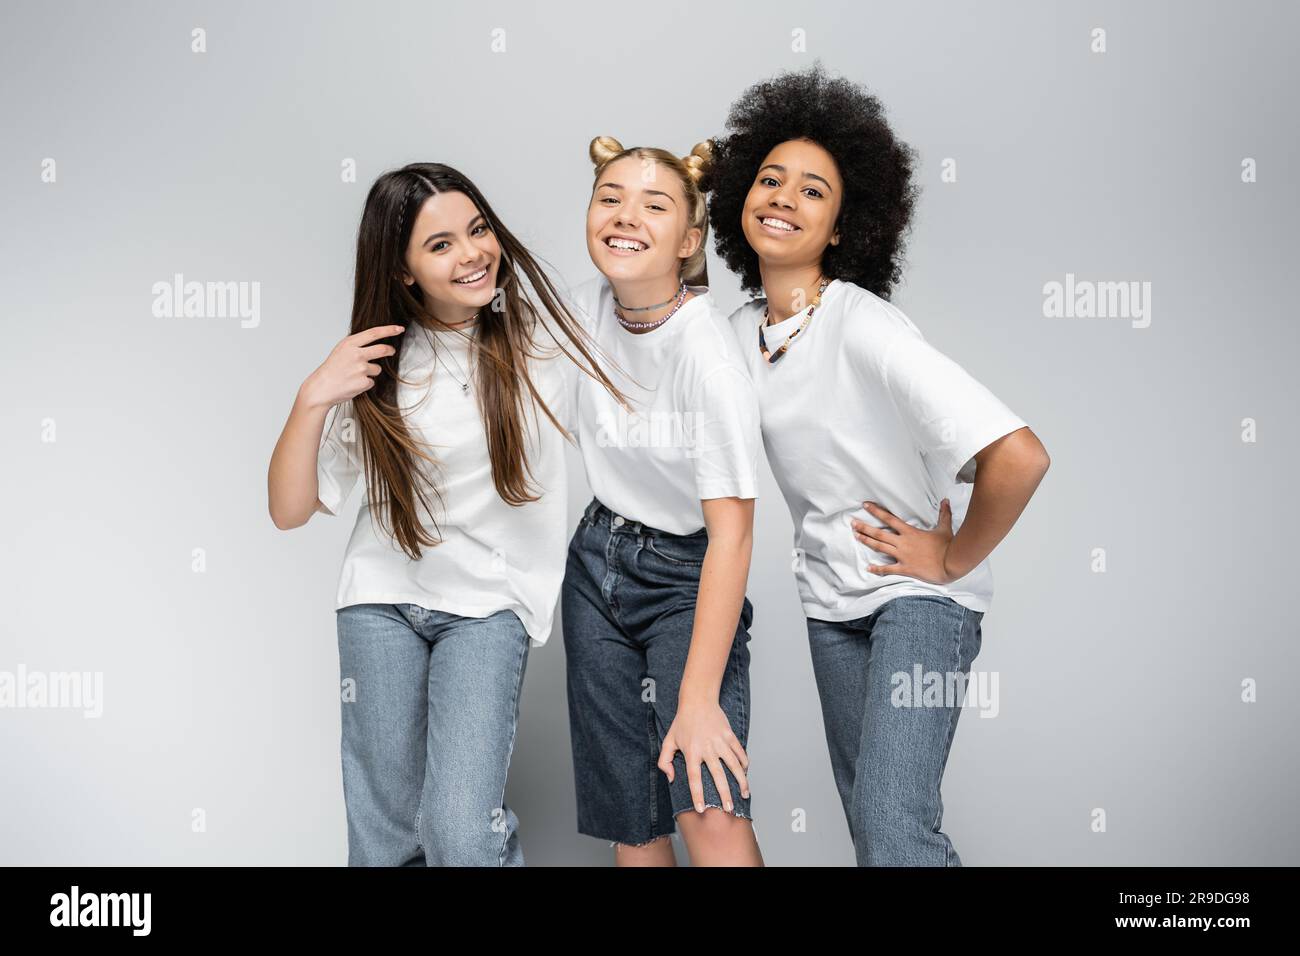 Ragazze adolescenti eleganti e gioiose in jeans e t-shirt bianche che guardano la fotocamera mentre posano insieme su sfondo grigio, modelli per adolescenza e. Foto Stock